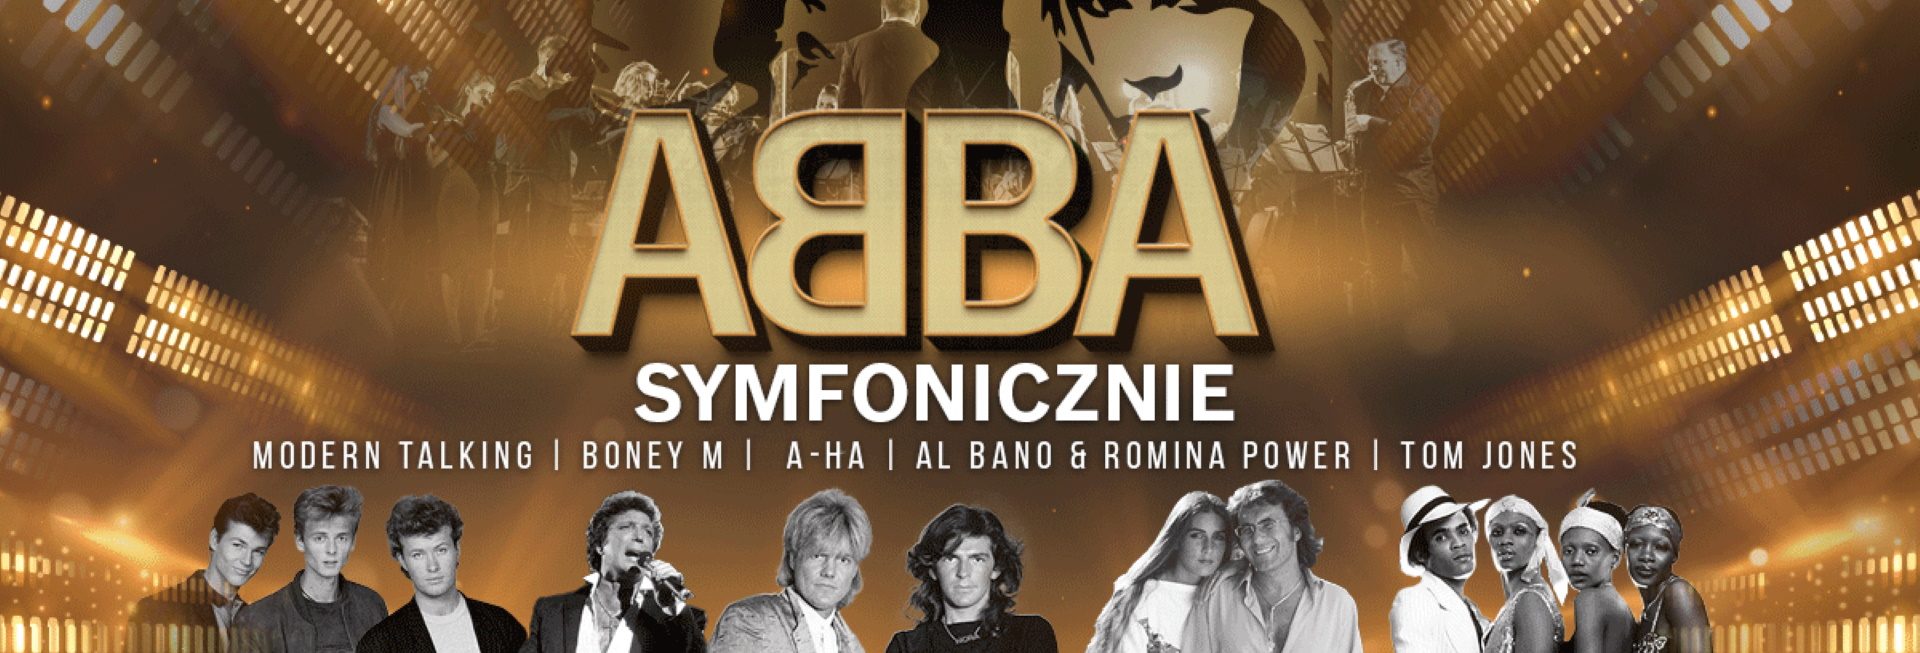 Plakat zapraszający do Olsztyna na koncert ABBA i INNI Symfonicznie Filharmonia Olsztyn 2023.